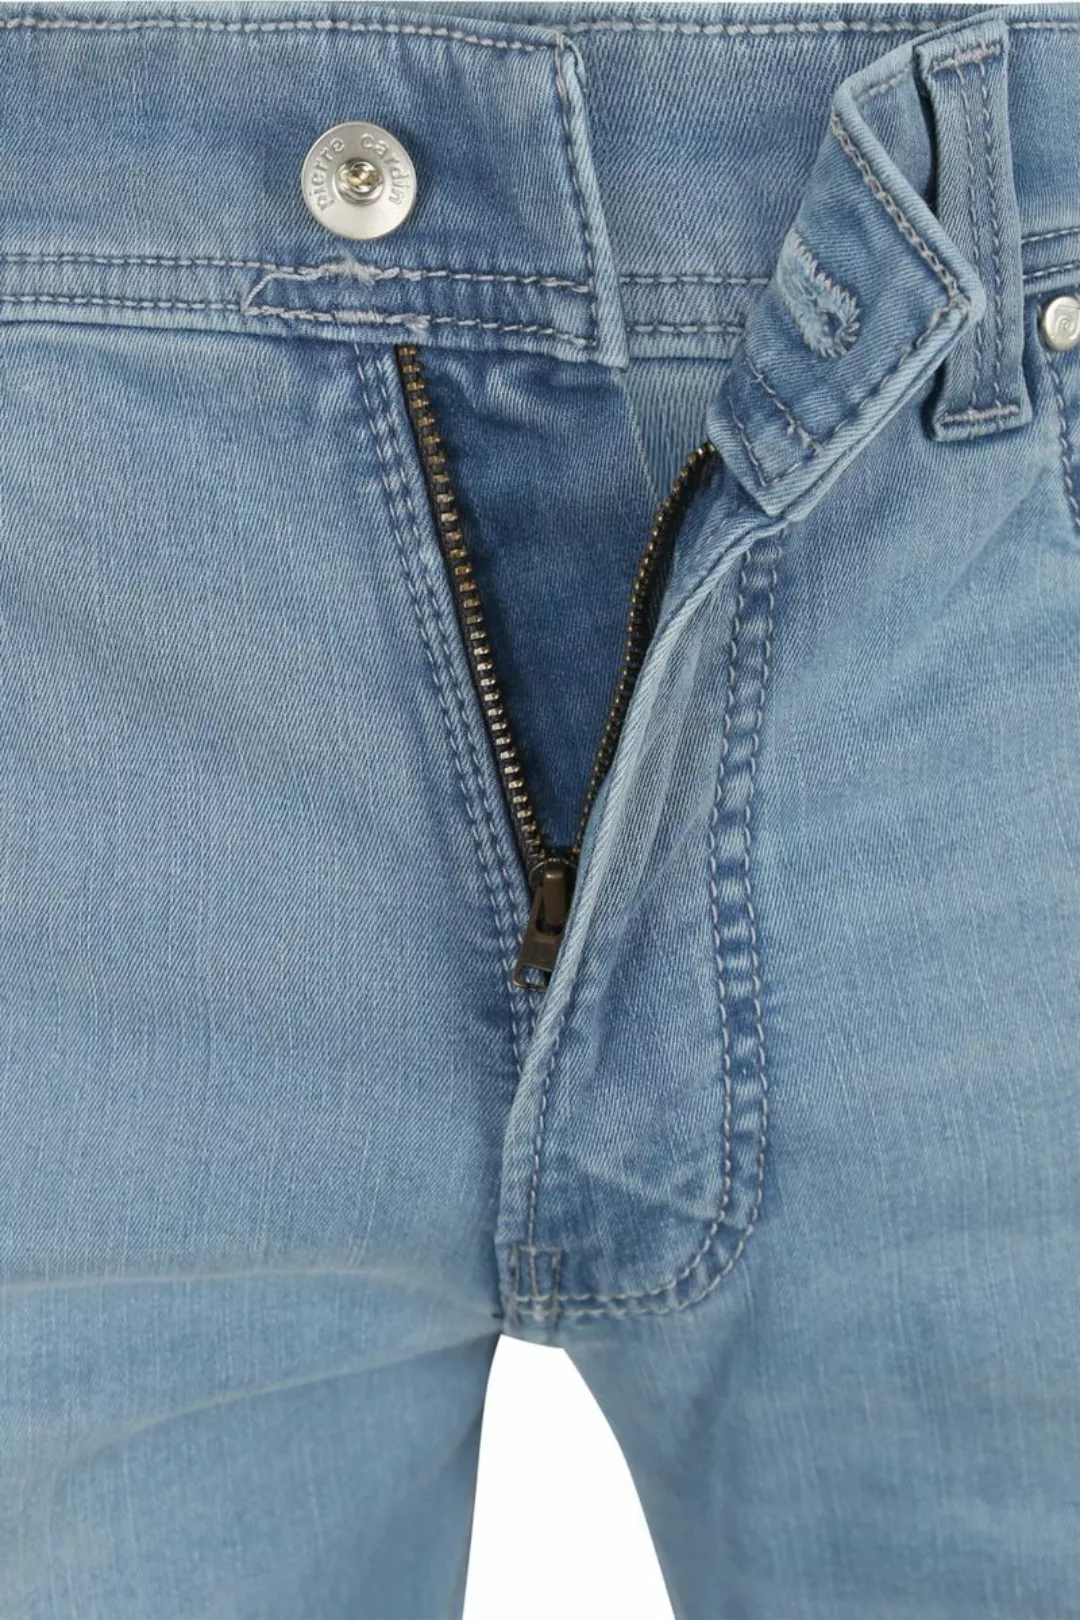 Pierre Cardin Jeans Lyon Tapered Future Flex Hellblau  - Größe W 33 - L 32 günstig online kaufen